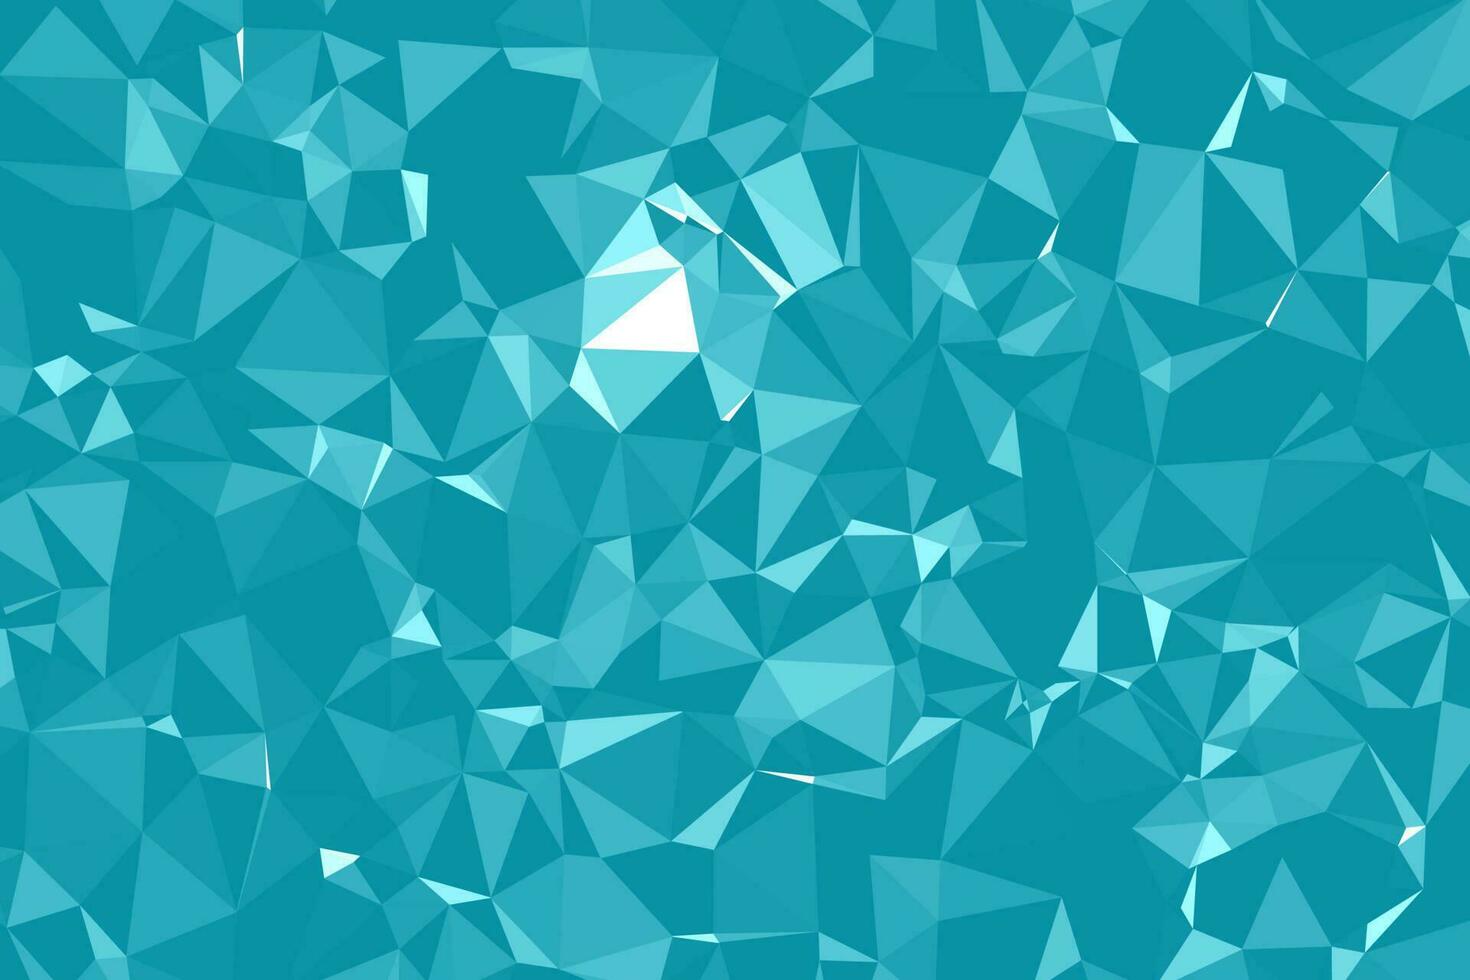 abstrait polygonale bleu texturé. low poly géométrique composé de triangles de différentes tailles et couleurs. utiliser dans la couverture de conception, la présentation, la carte de visite ou le site Web. vecteur